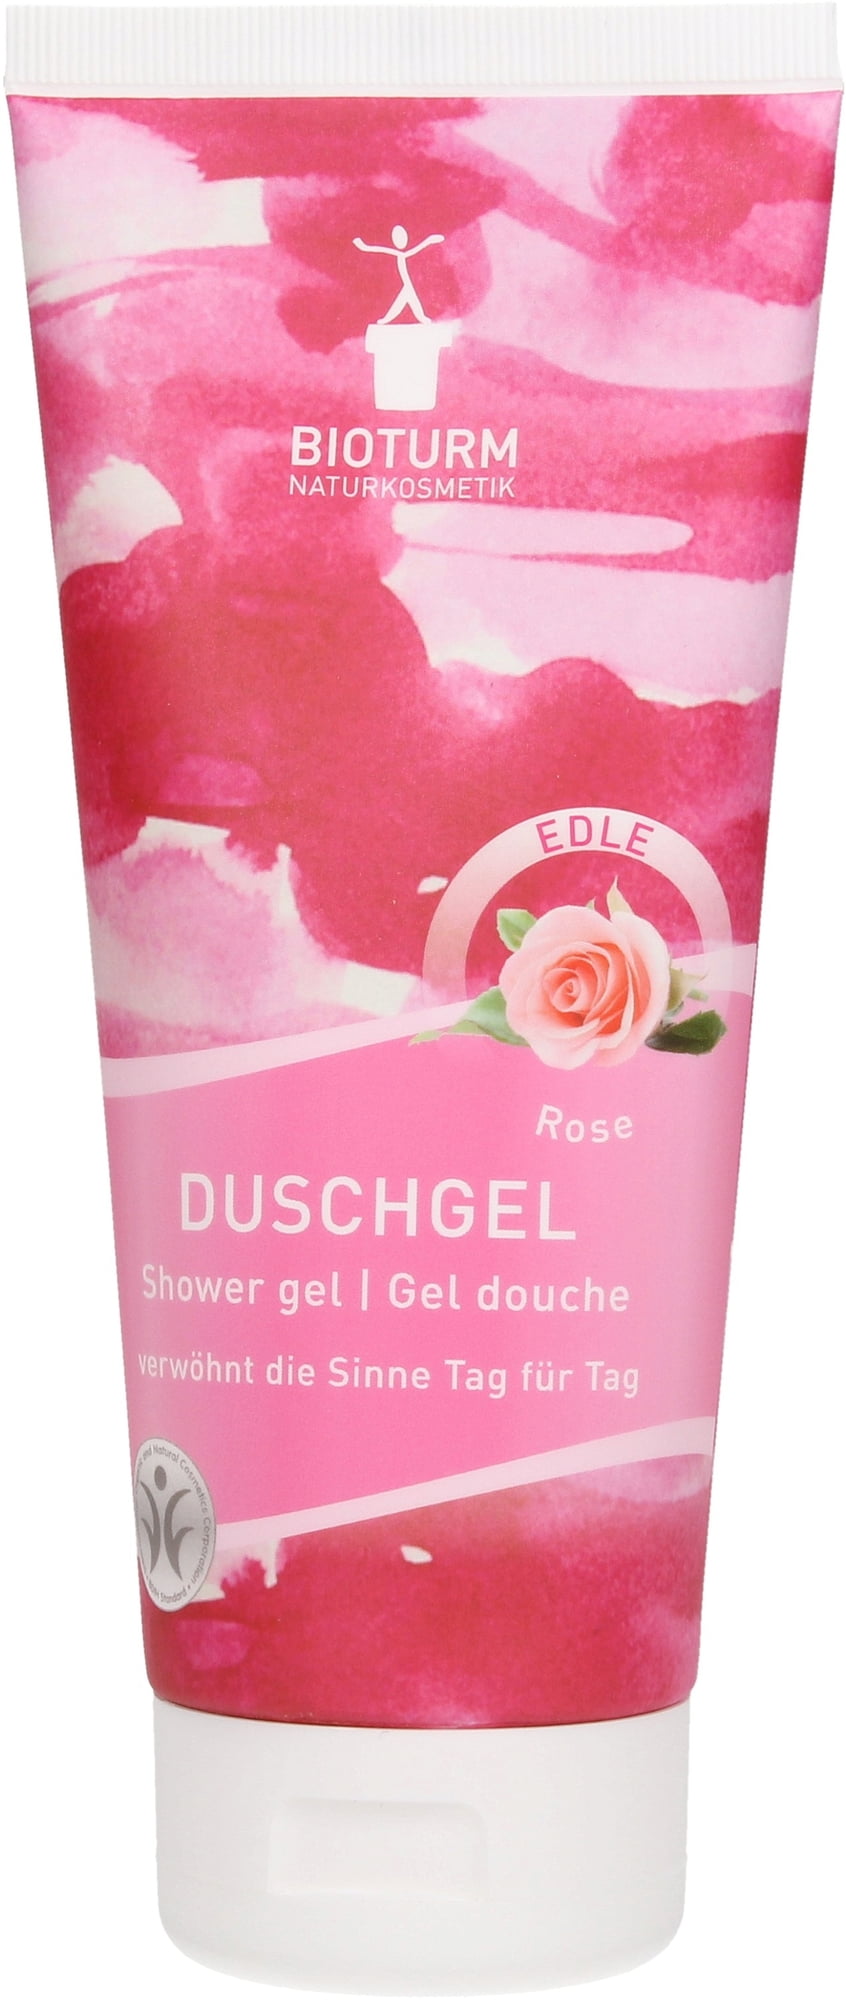 DuschGel Rose